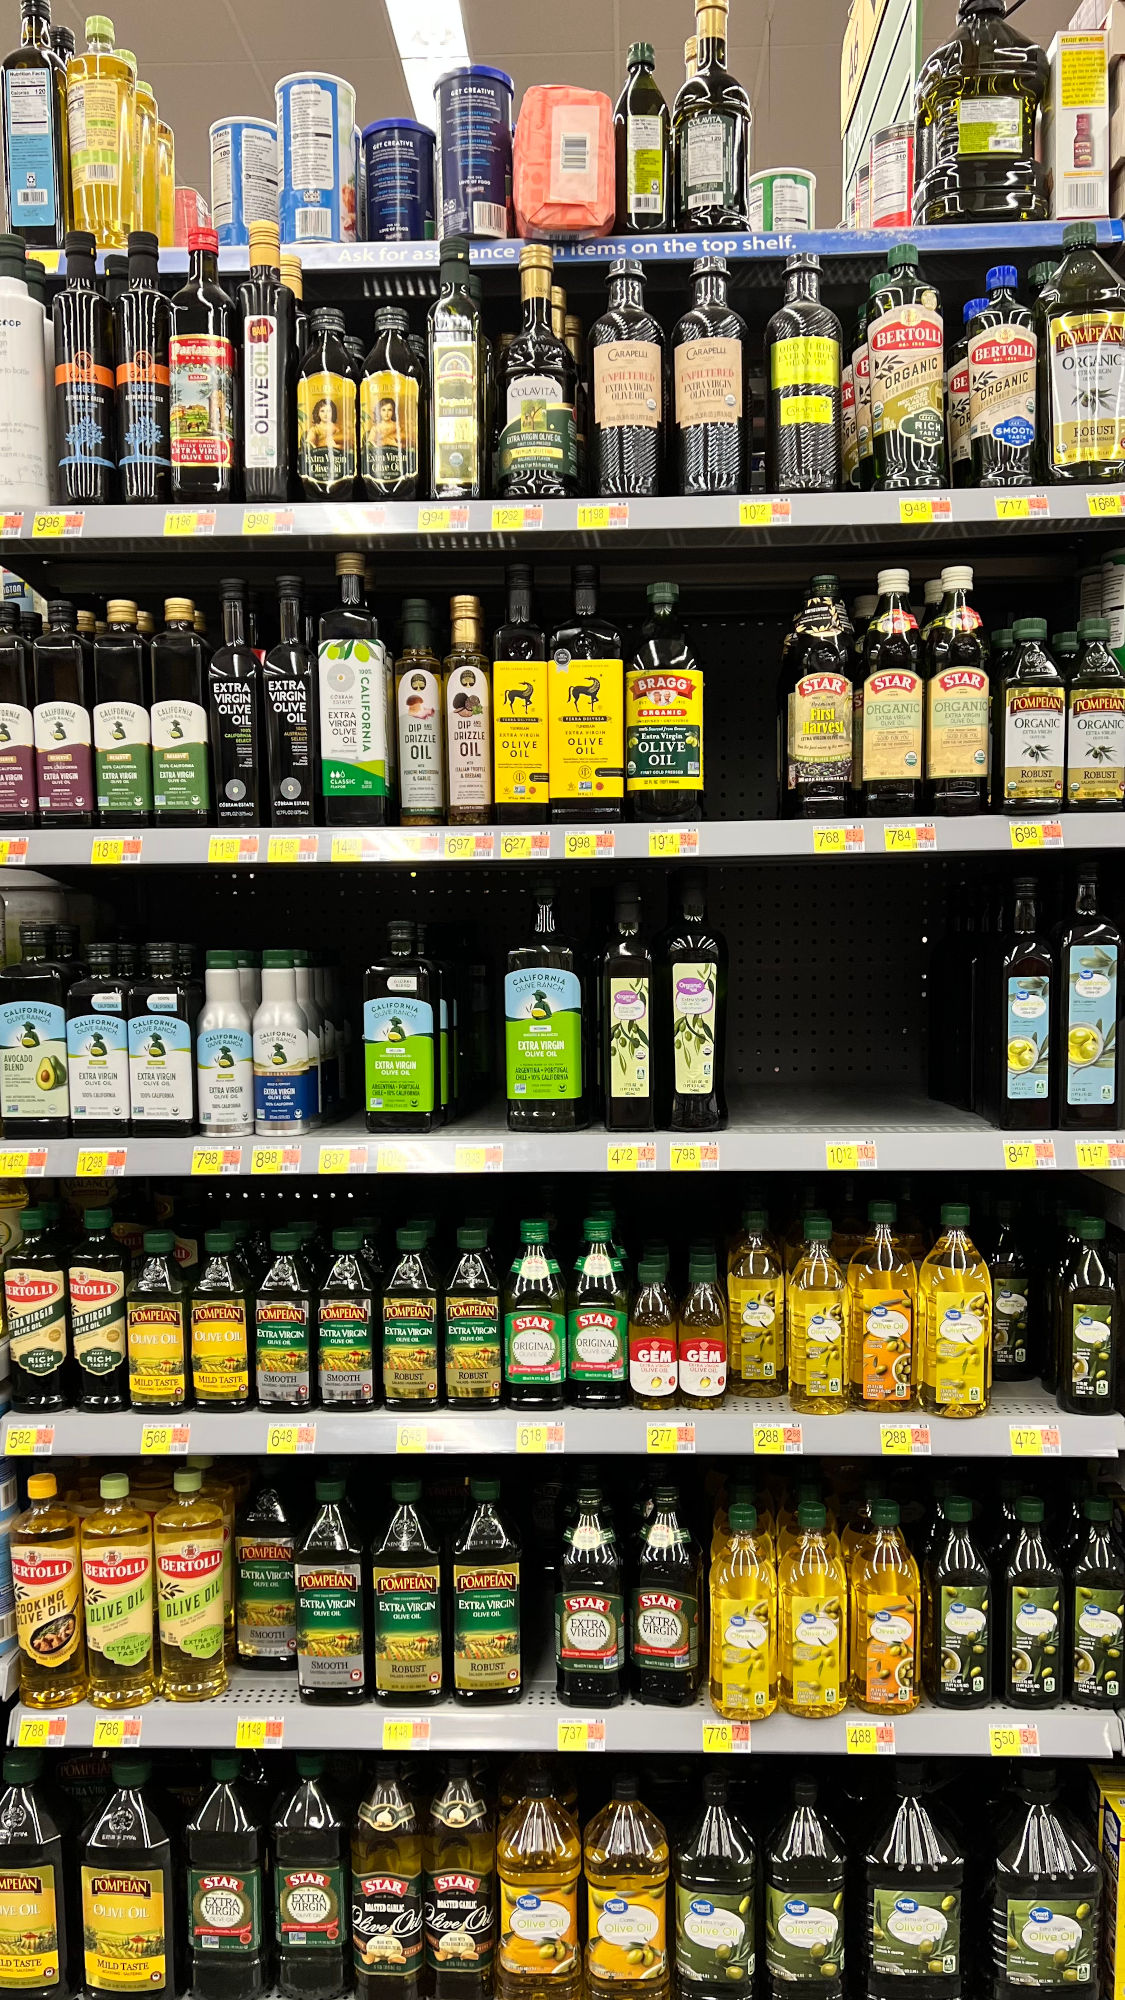 Olive Oil Brands at Walmart